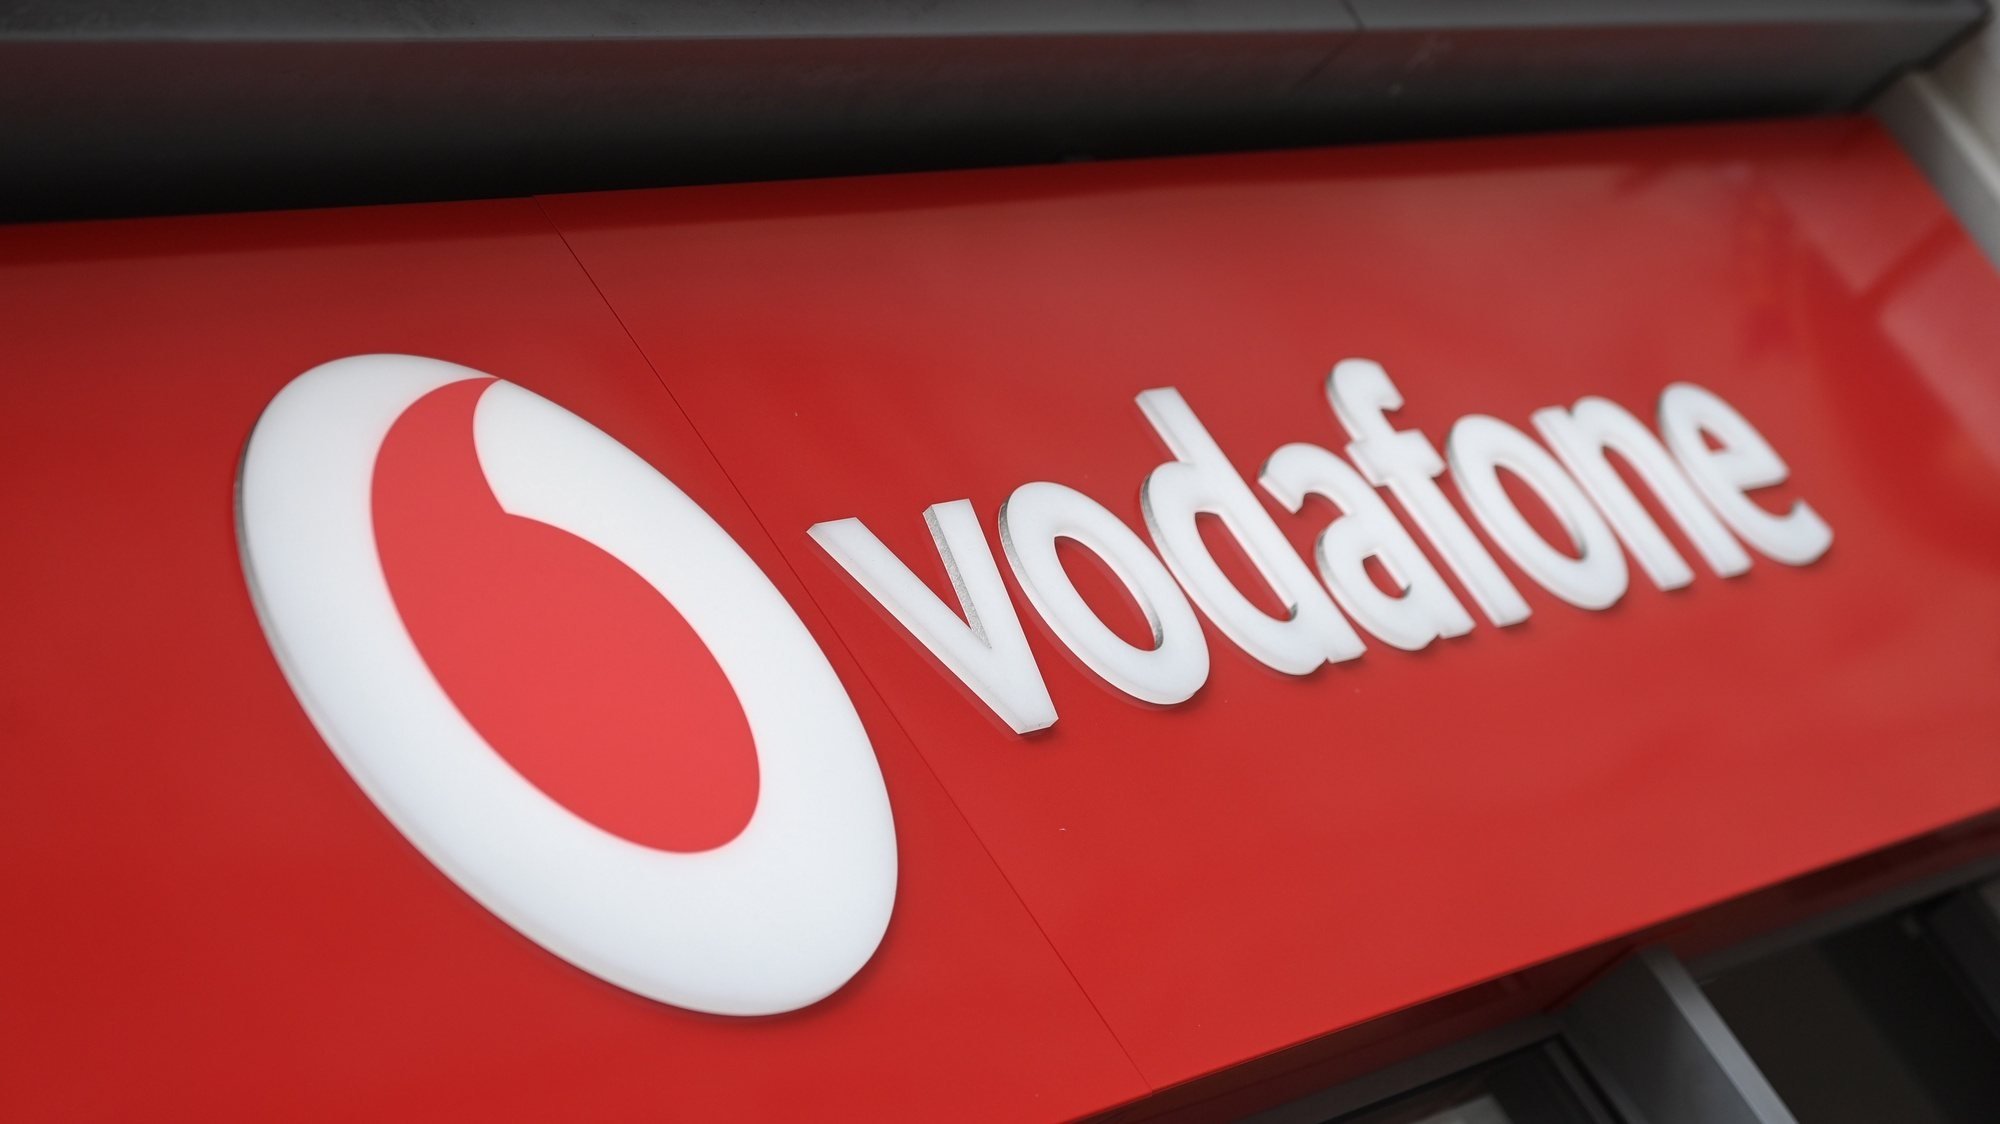 Vodafone em Espanha confirma roubo de dados de “pequena percentagem” de clientes